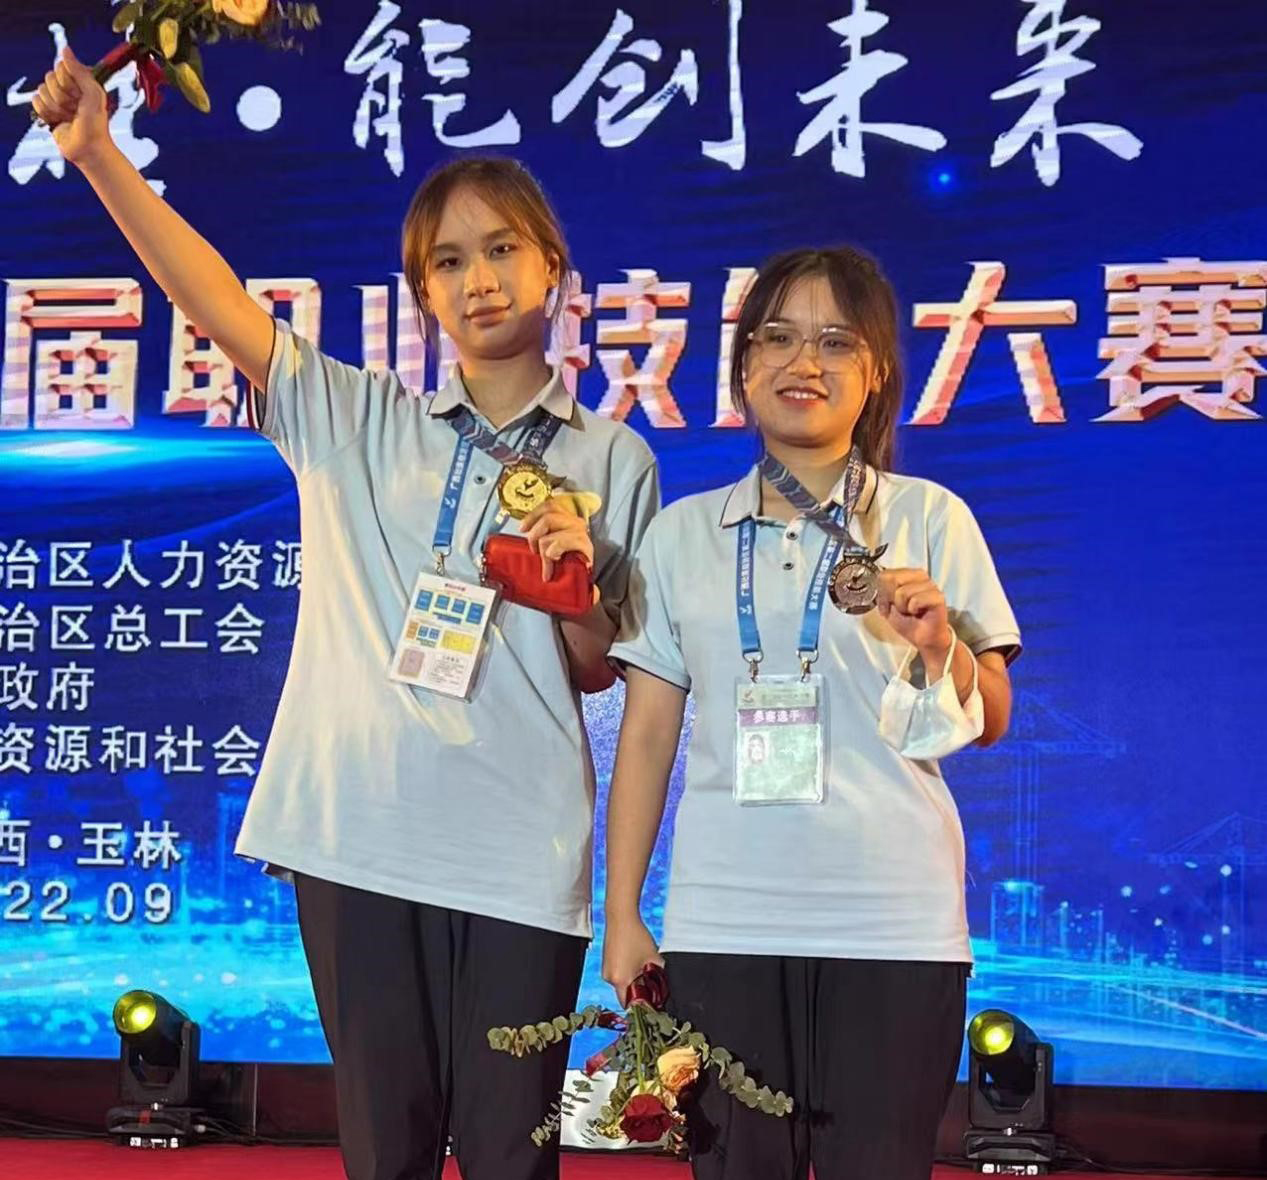 珠宝学院学生梁俊、李紫琦荣获第二届全区职业技术大赛（宝石加工）冠亚军